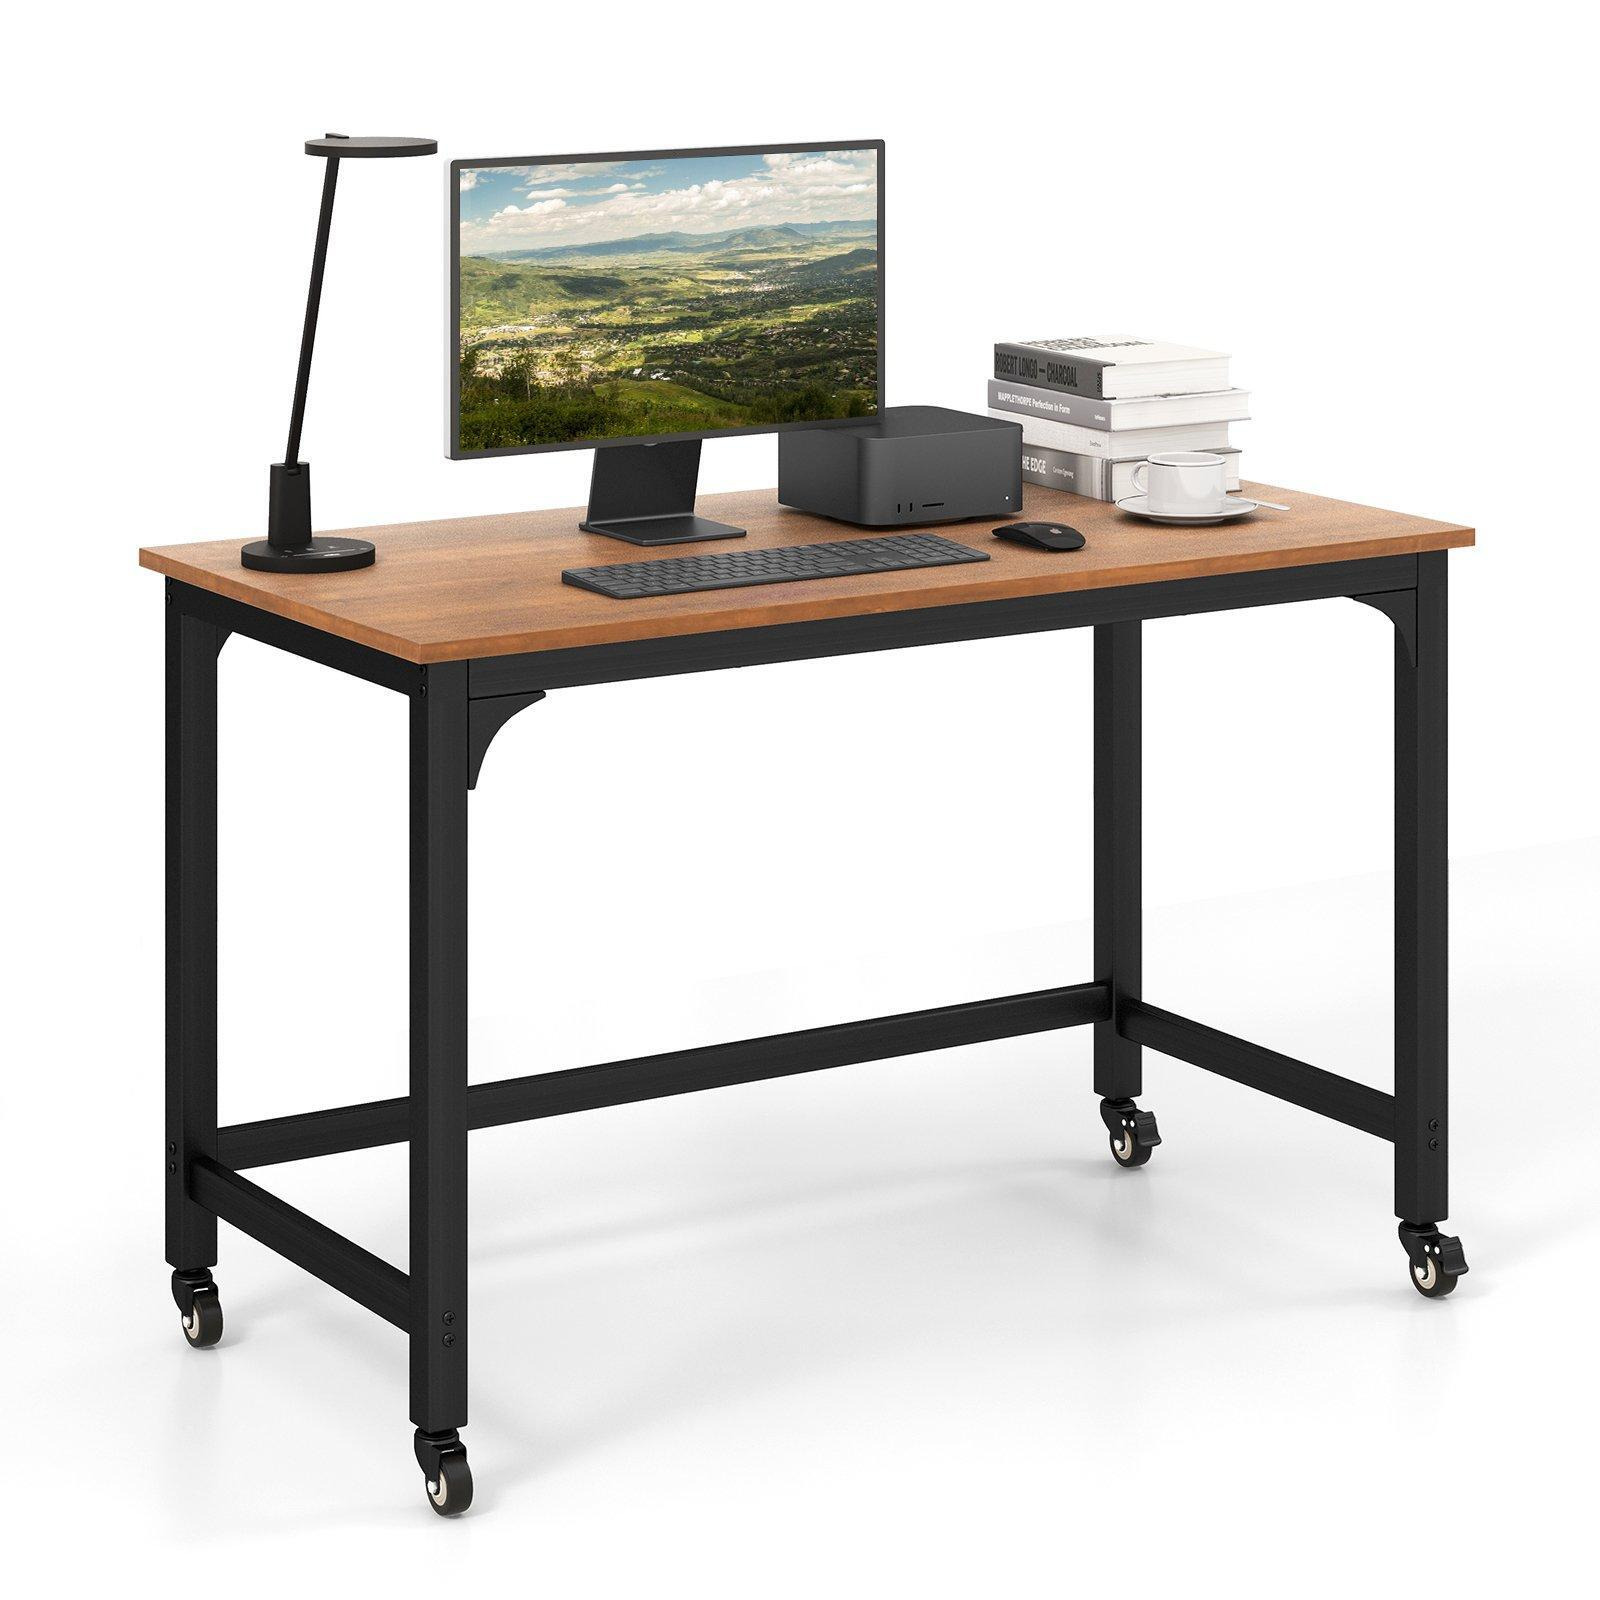 Large Rolling Computer Desk Metal Frame Writing Desk Workstation Lockable Wheels - image 1